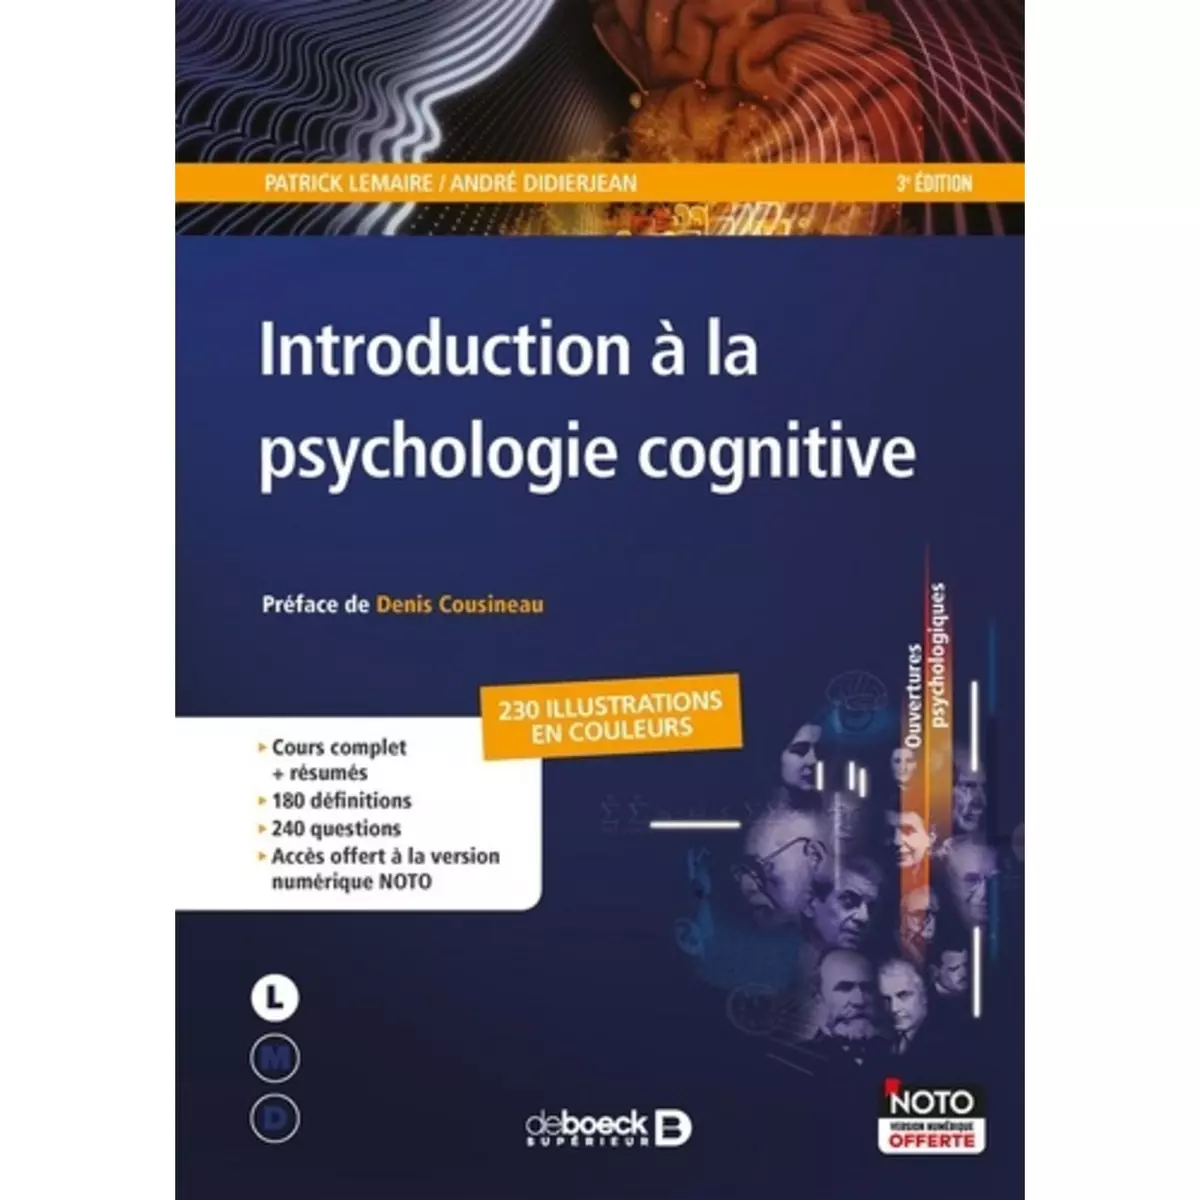  INTRODUCTION A LA PSYCHOLOGIE COGNITIVE. 3E EDITION, Lemaire Patrick